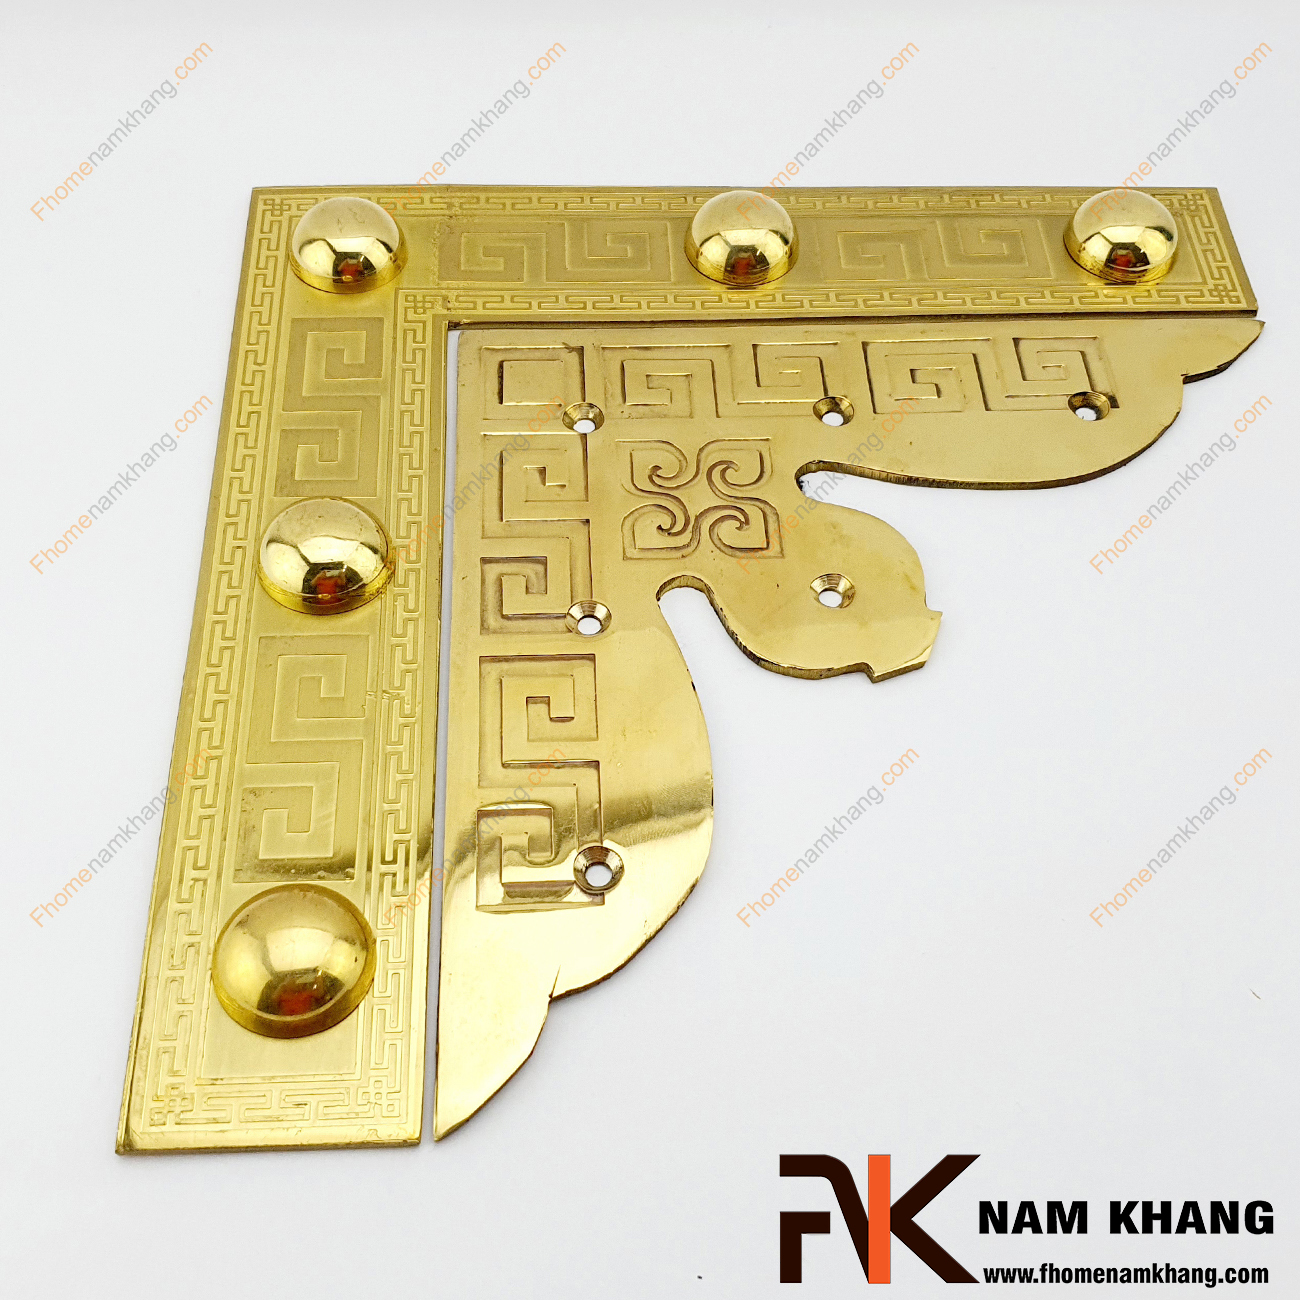 Ke góc cửa gỗ màu đồng vàng bằng đồng NK188-KVM thường dùng cho cửa chính, cửa cổng và đặc biệt là các loại cửa chất liệu gỗ quý mang đến vẻ uy nghiêm, sang trọng của gia chủ.